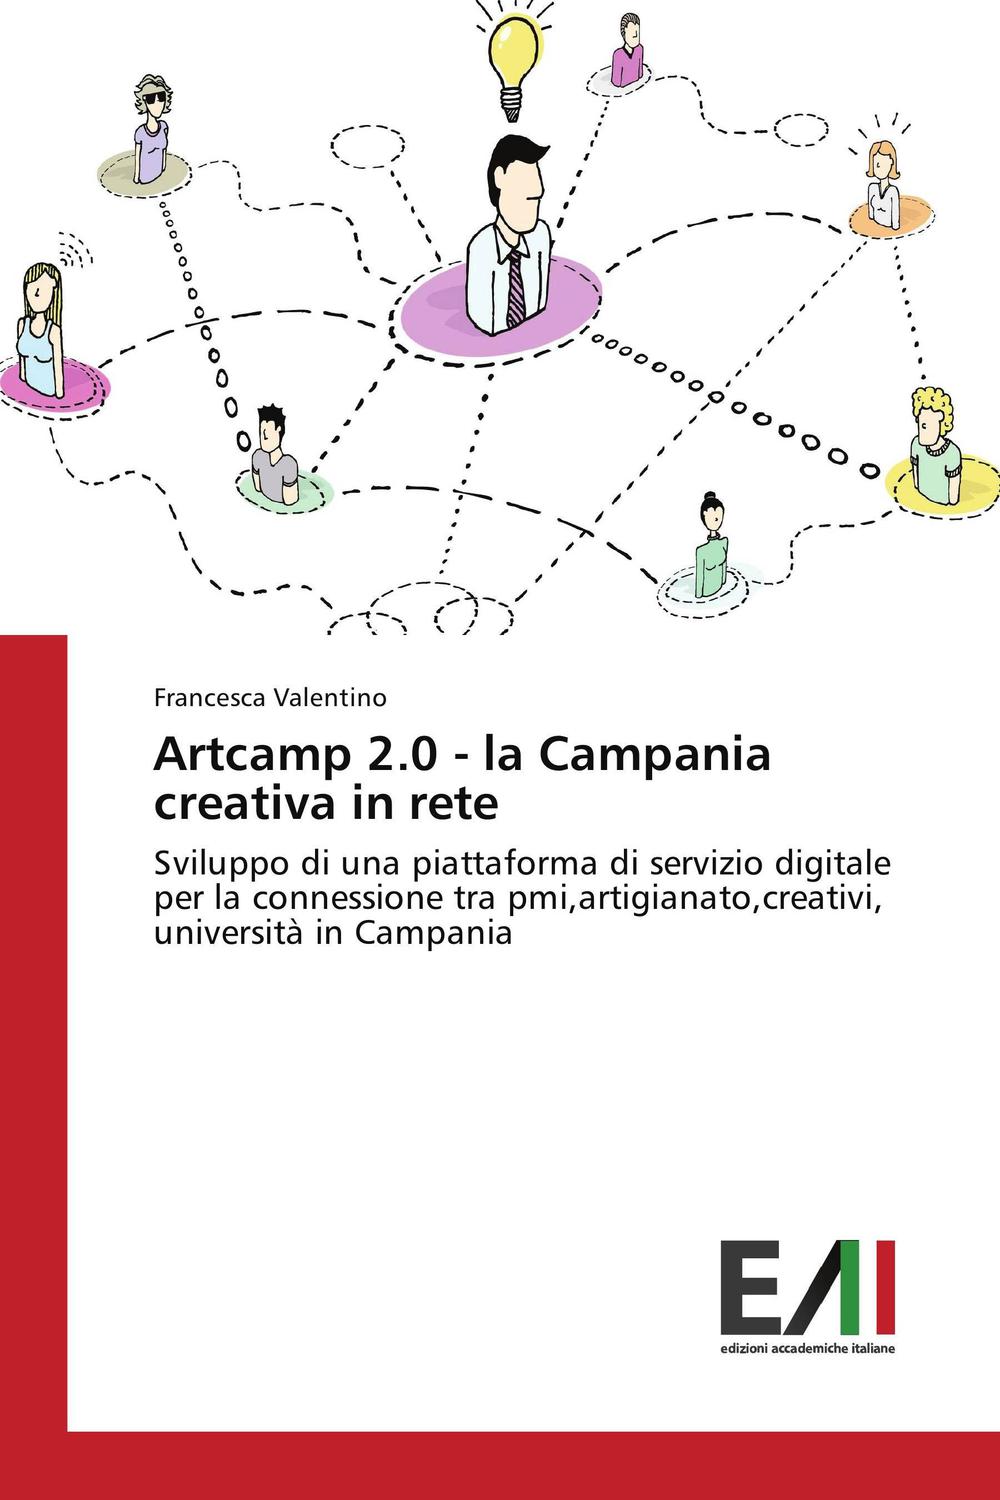 Artcamp 2.0 - la Campania creativa in rete - Francesca Valentino